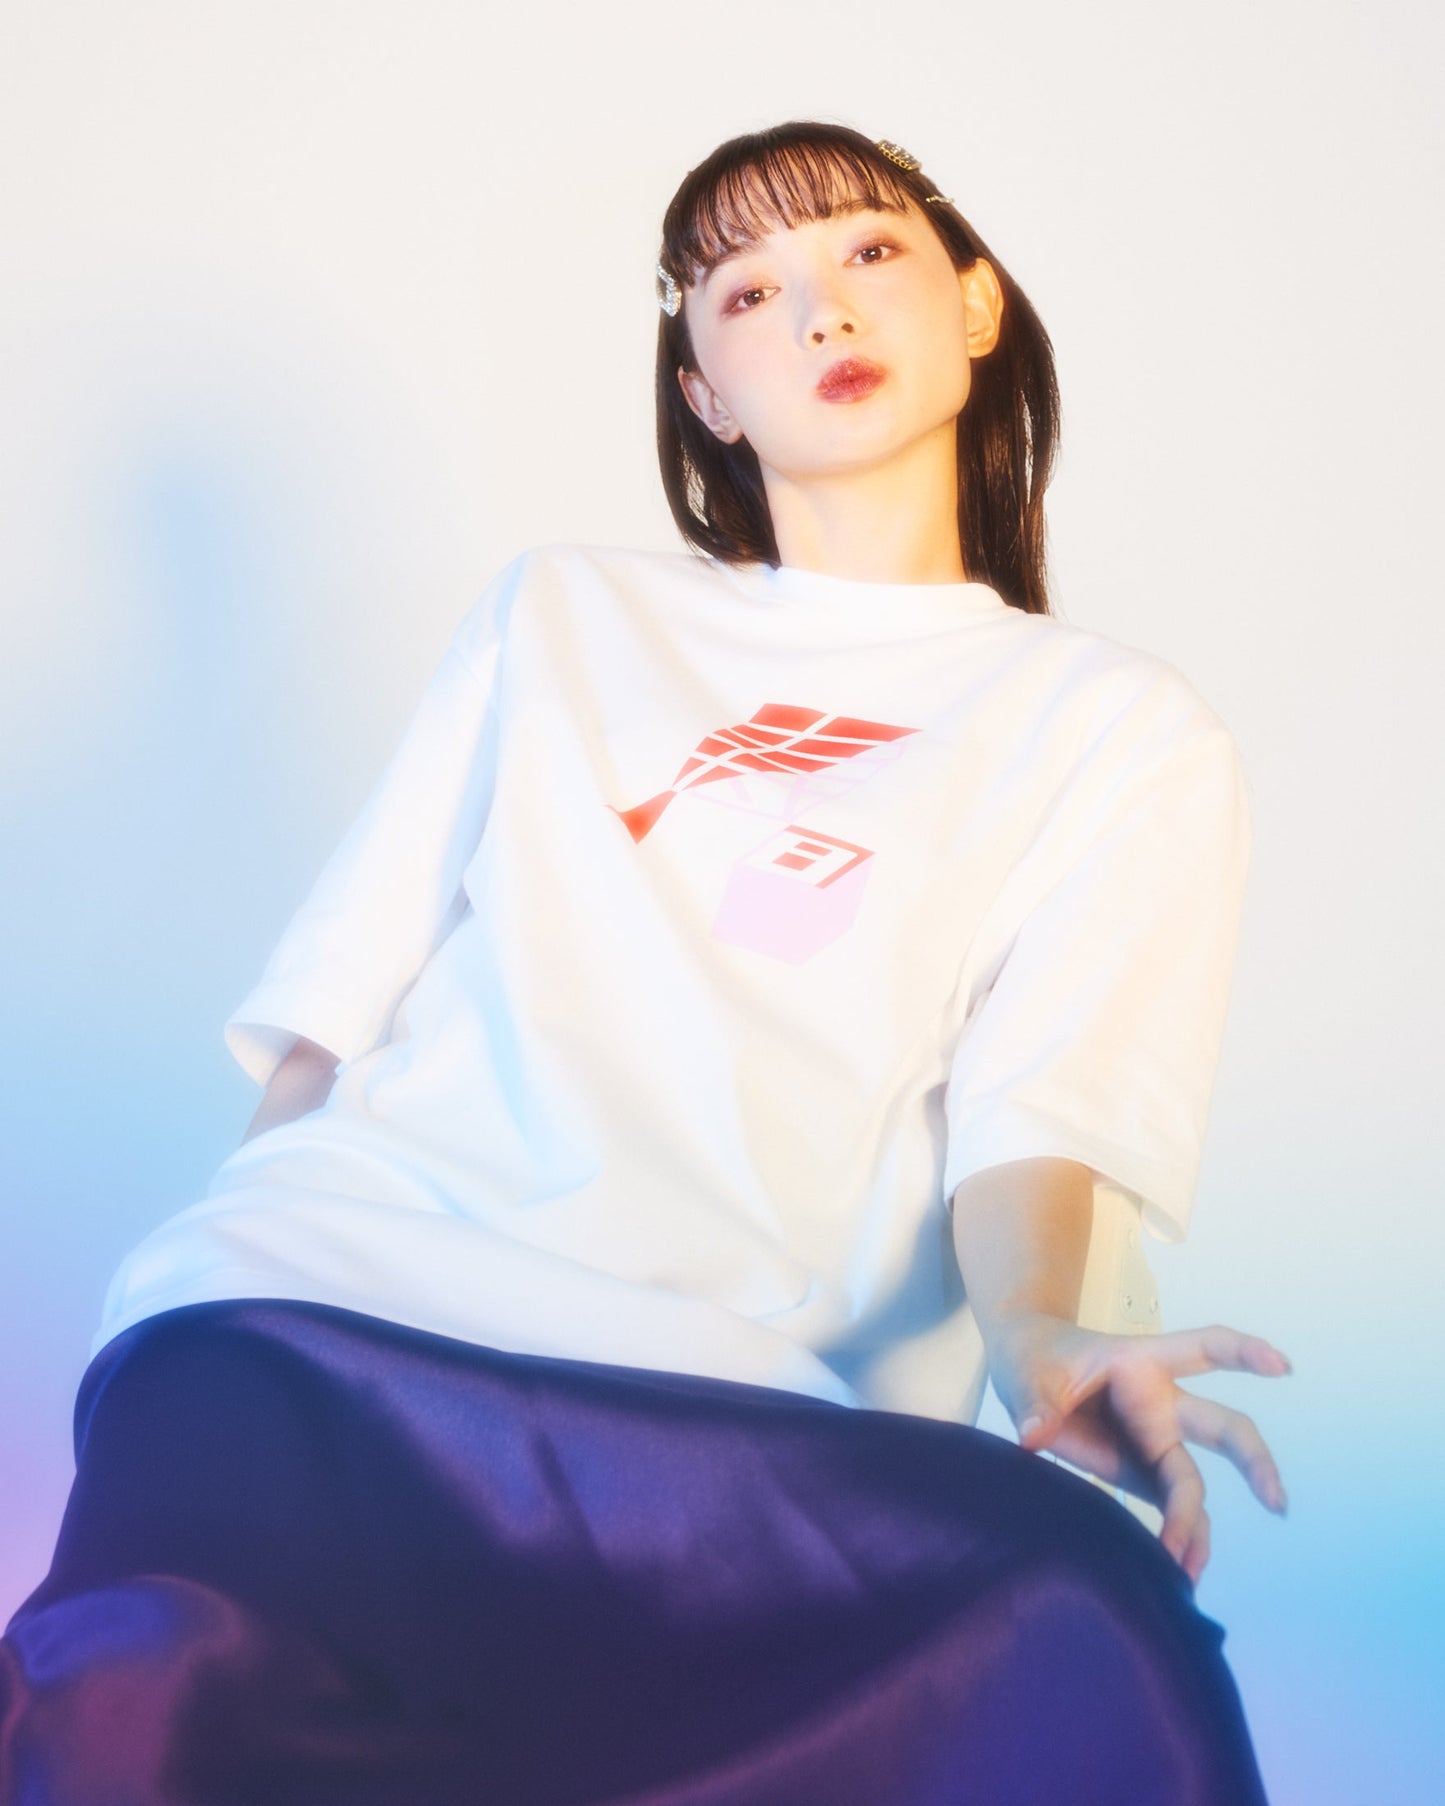 寿司 /Sushi LongT-Shirt BACK PRINT